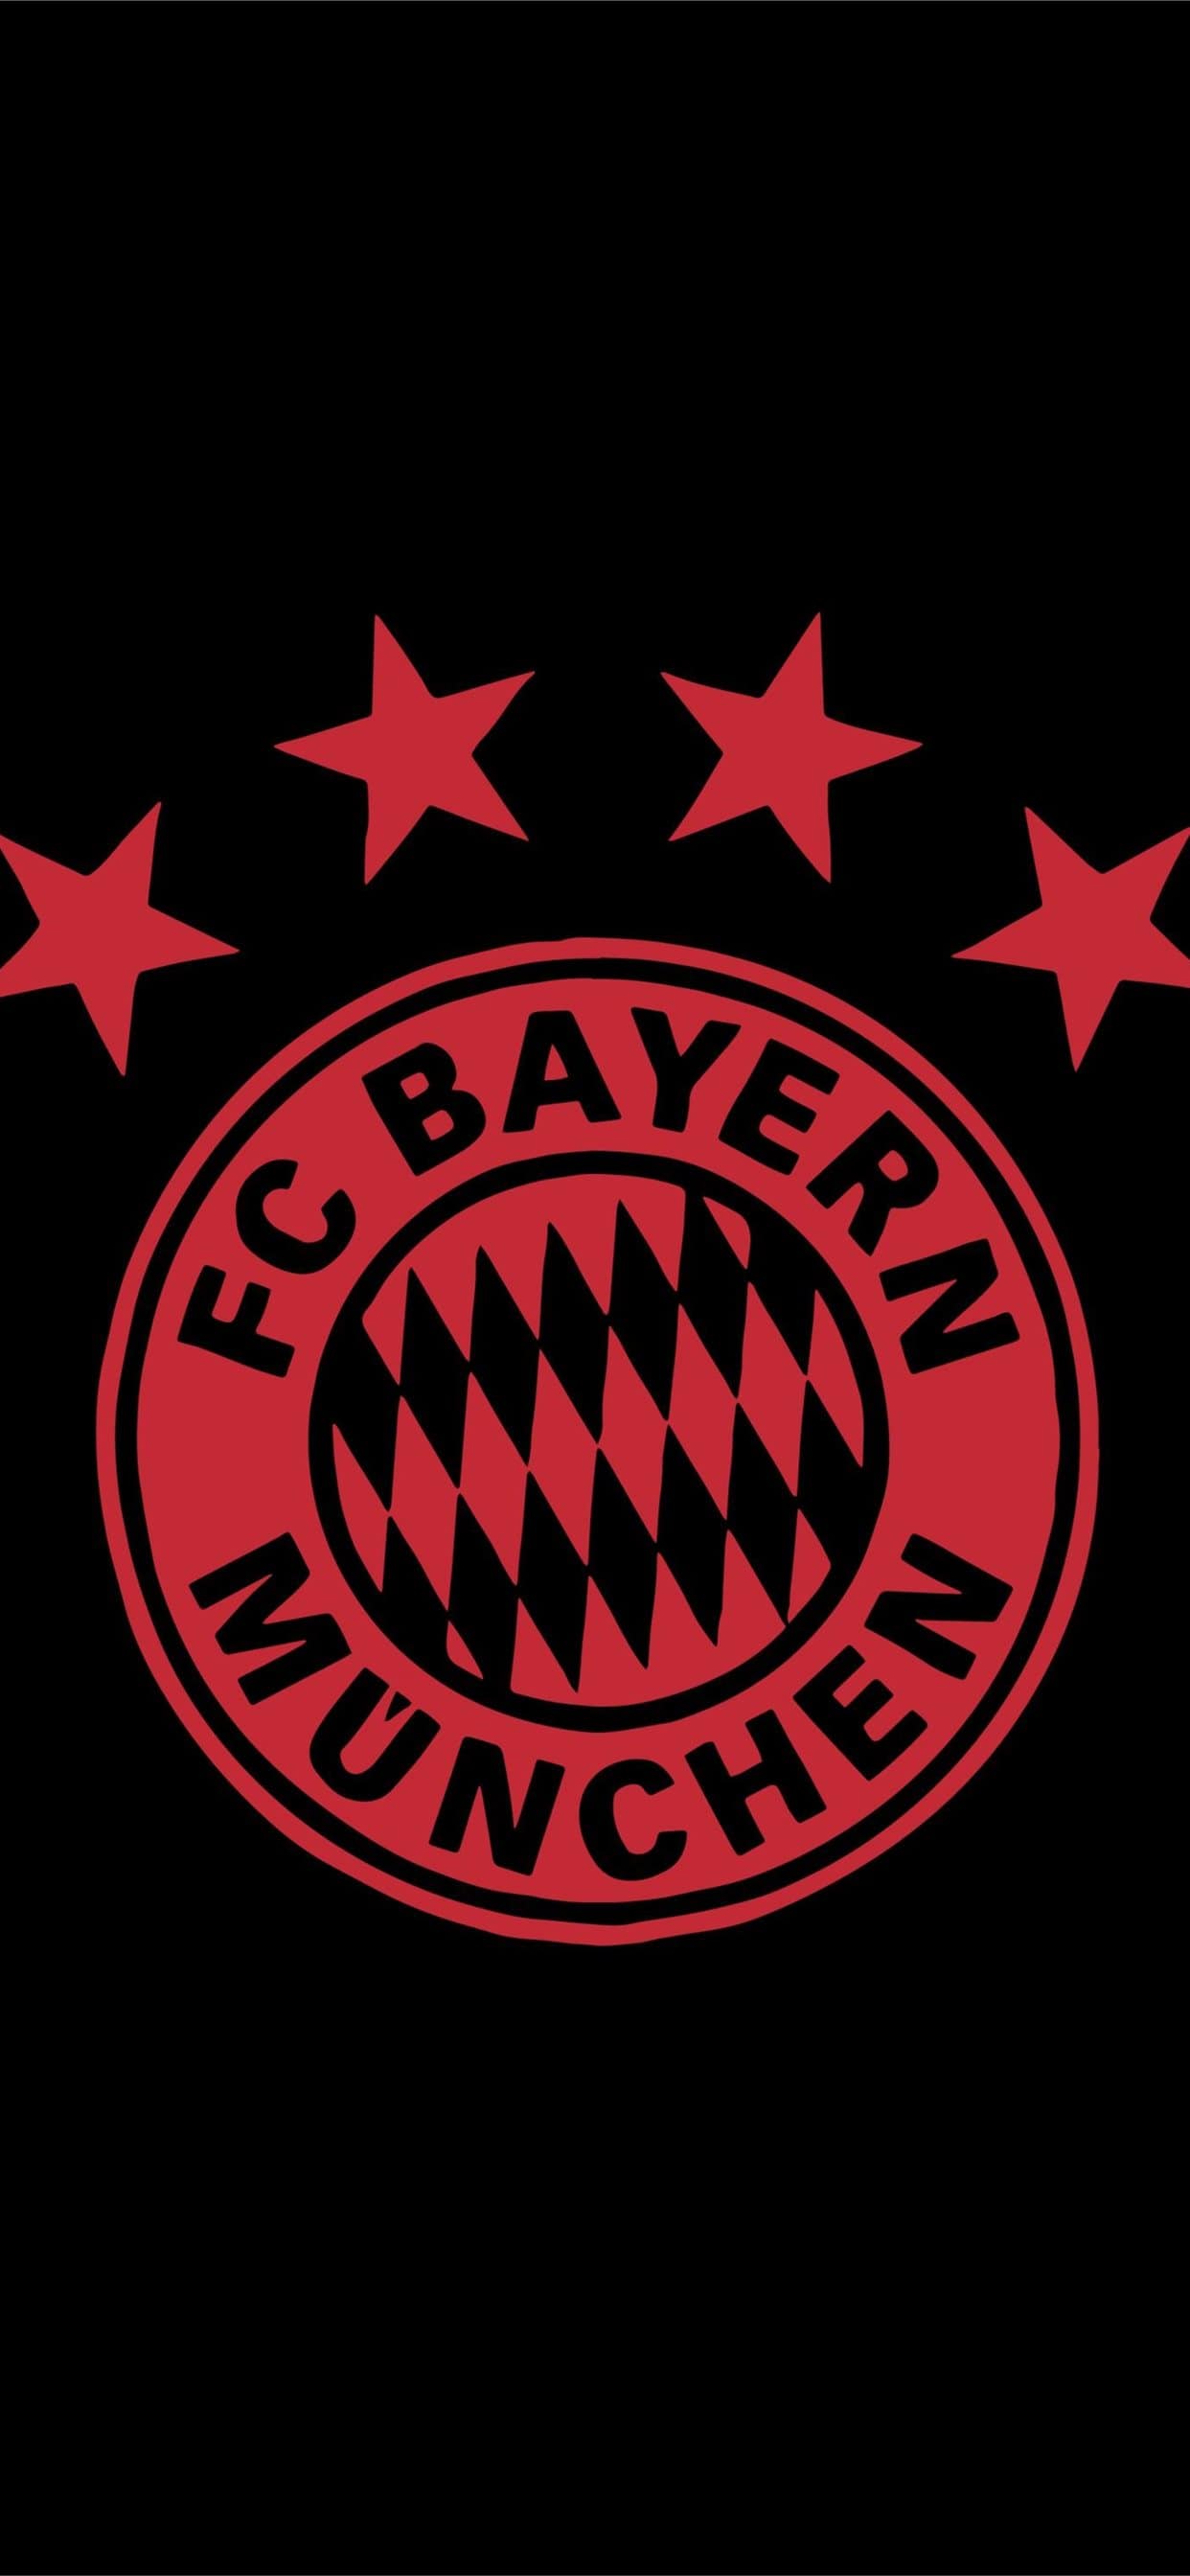 Fc Bayern Munich Wallpapers Top Free Fc Bayern Munich Backgrounds Wallpaperaccess